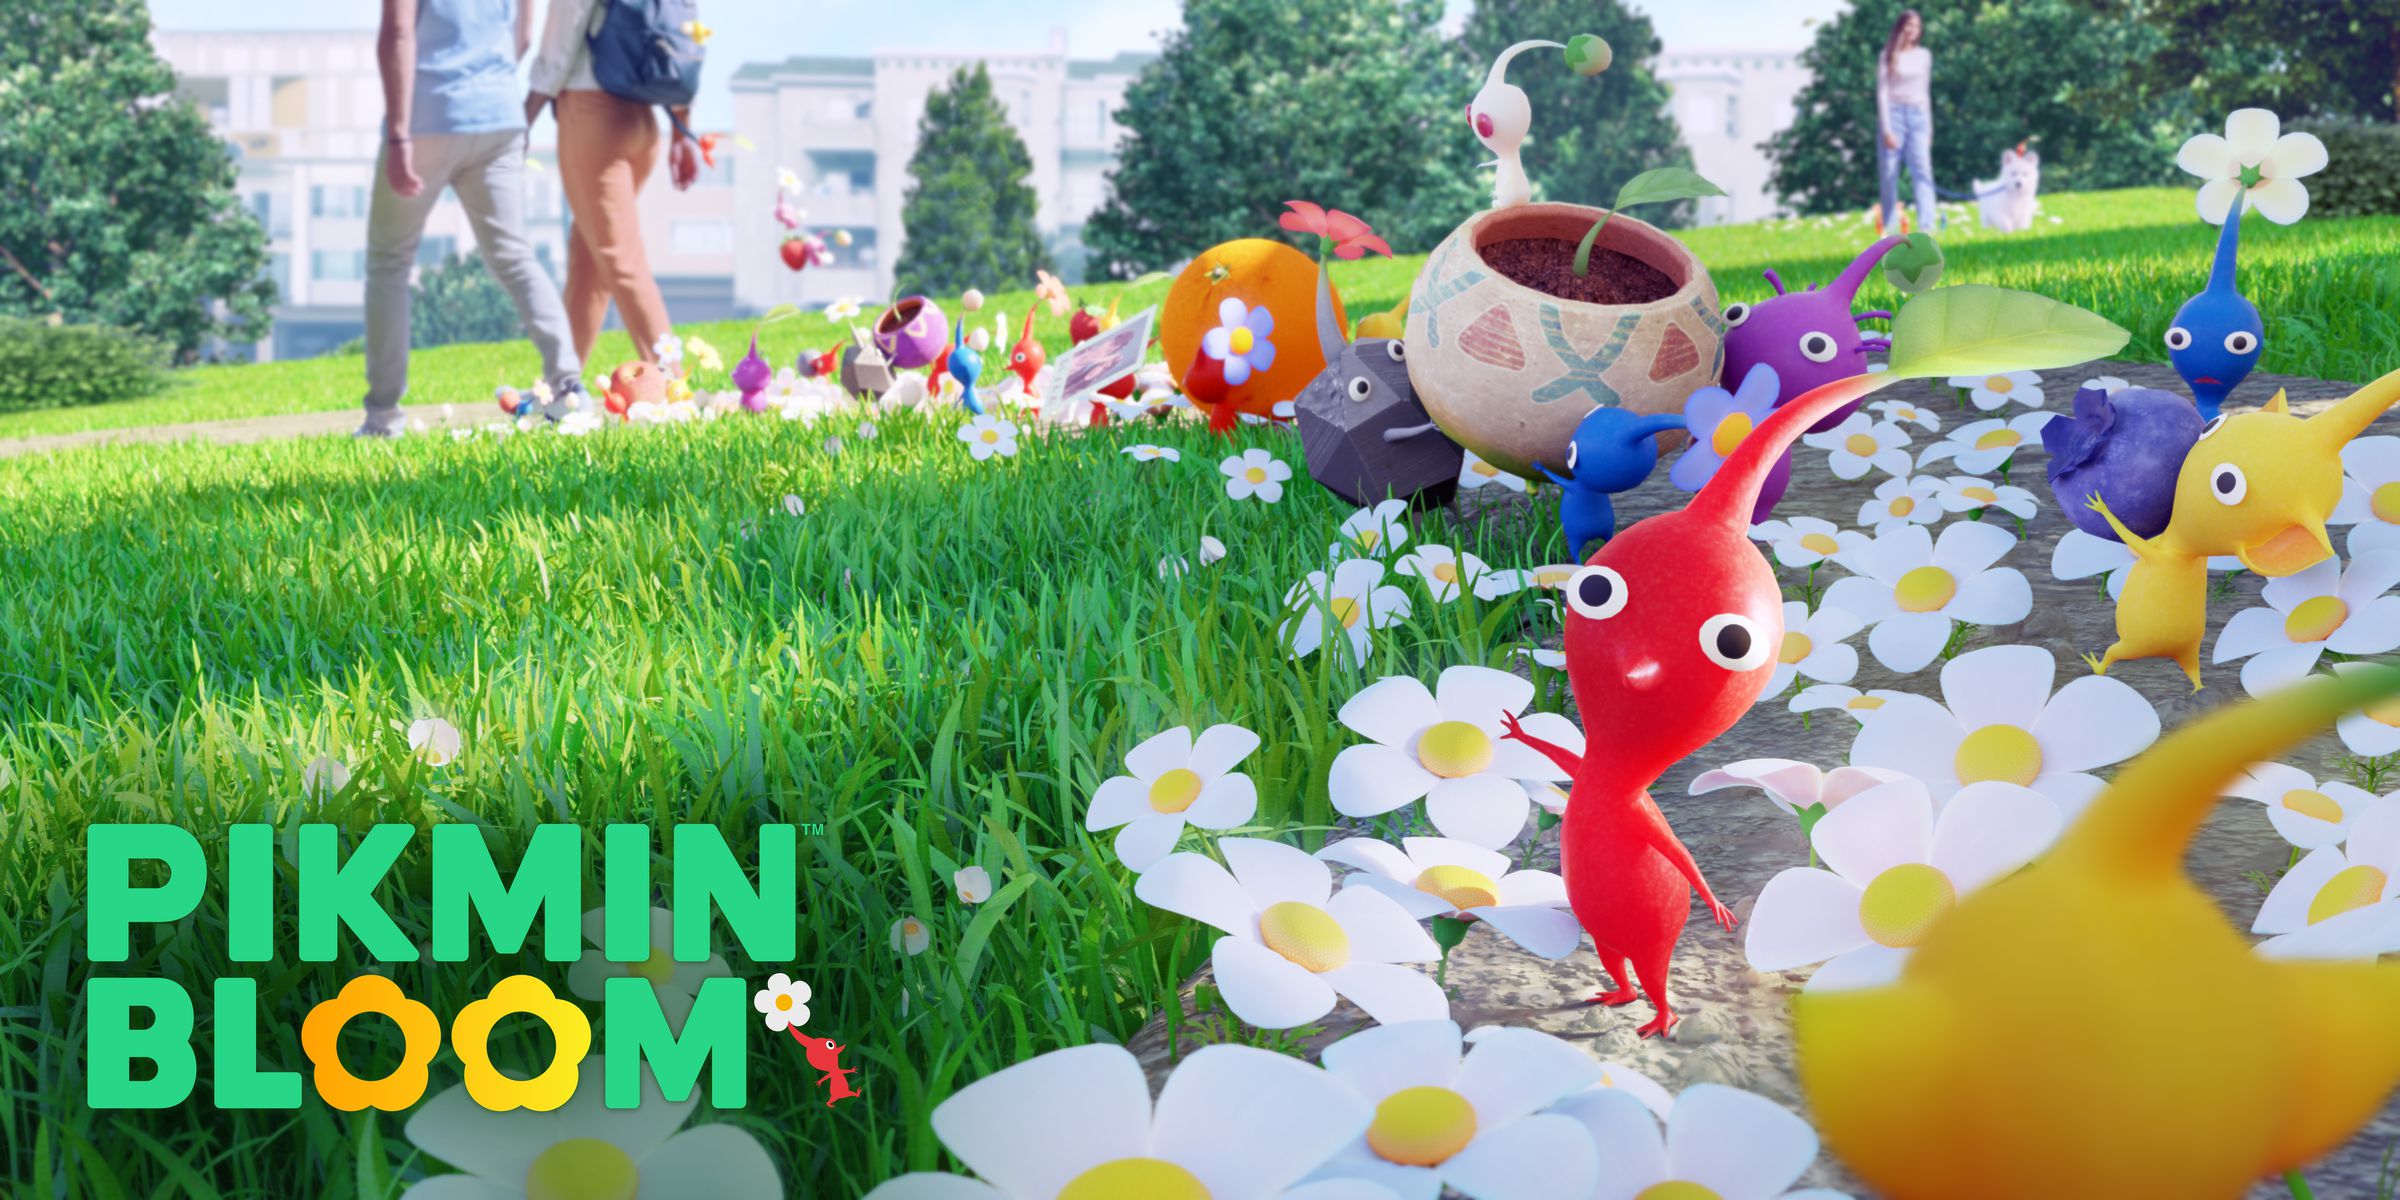 Pikmin Bloom screenshot: piccole creature colorate con grandi teste nel mezzo di un giardino pieno di margherite.